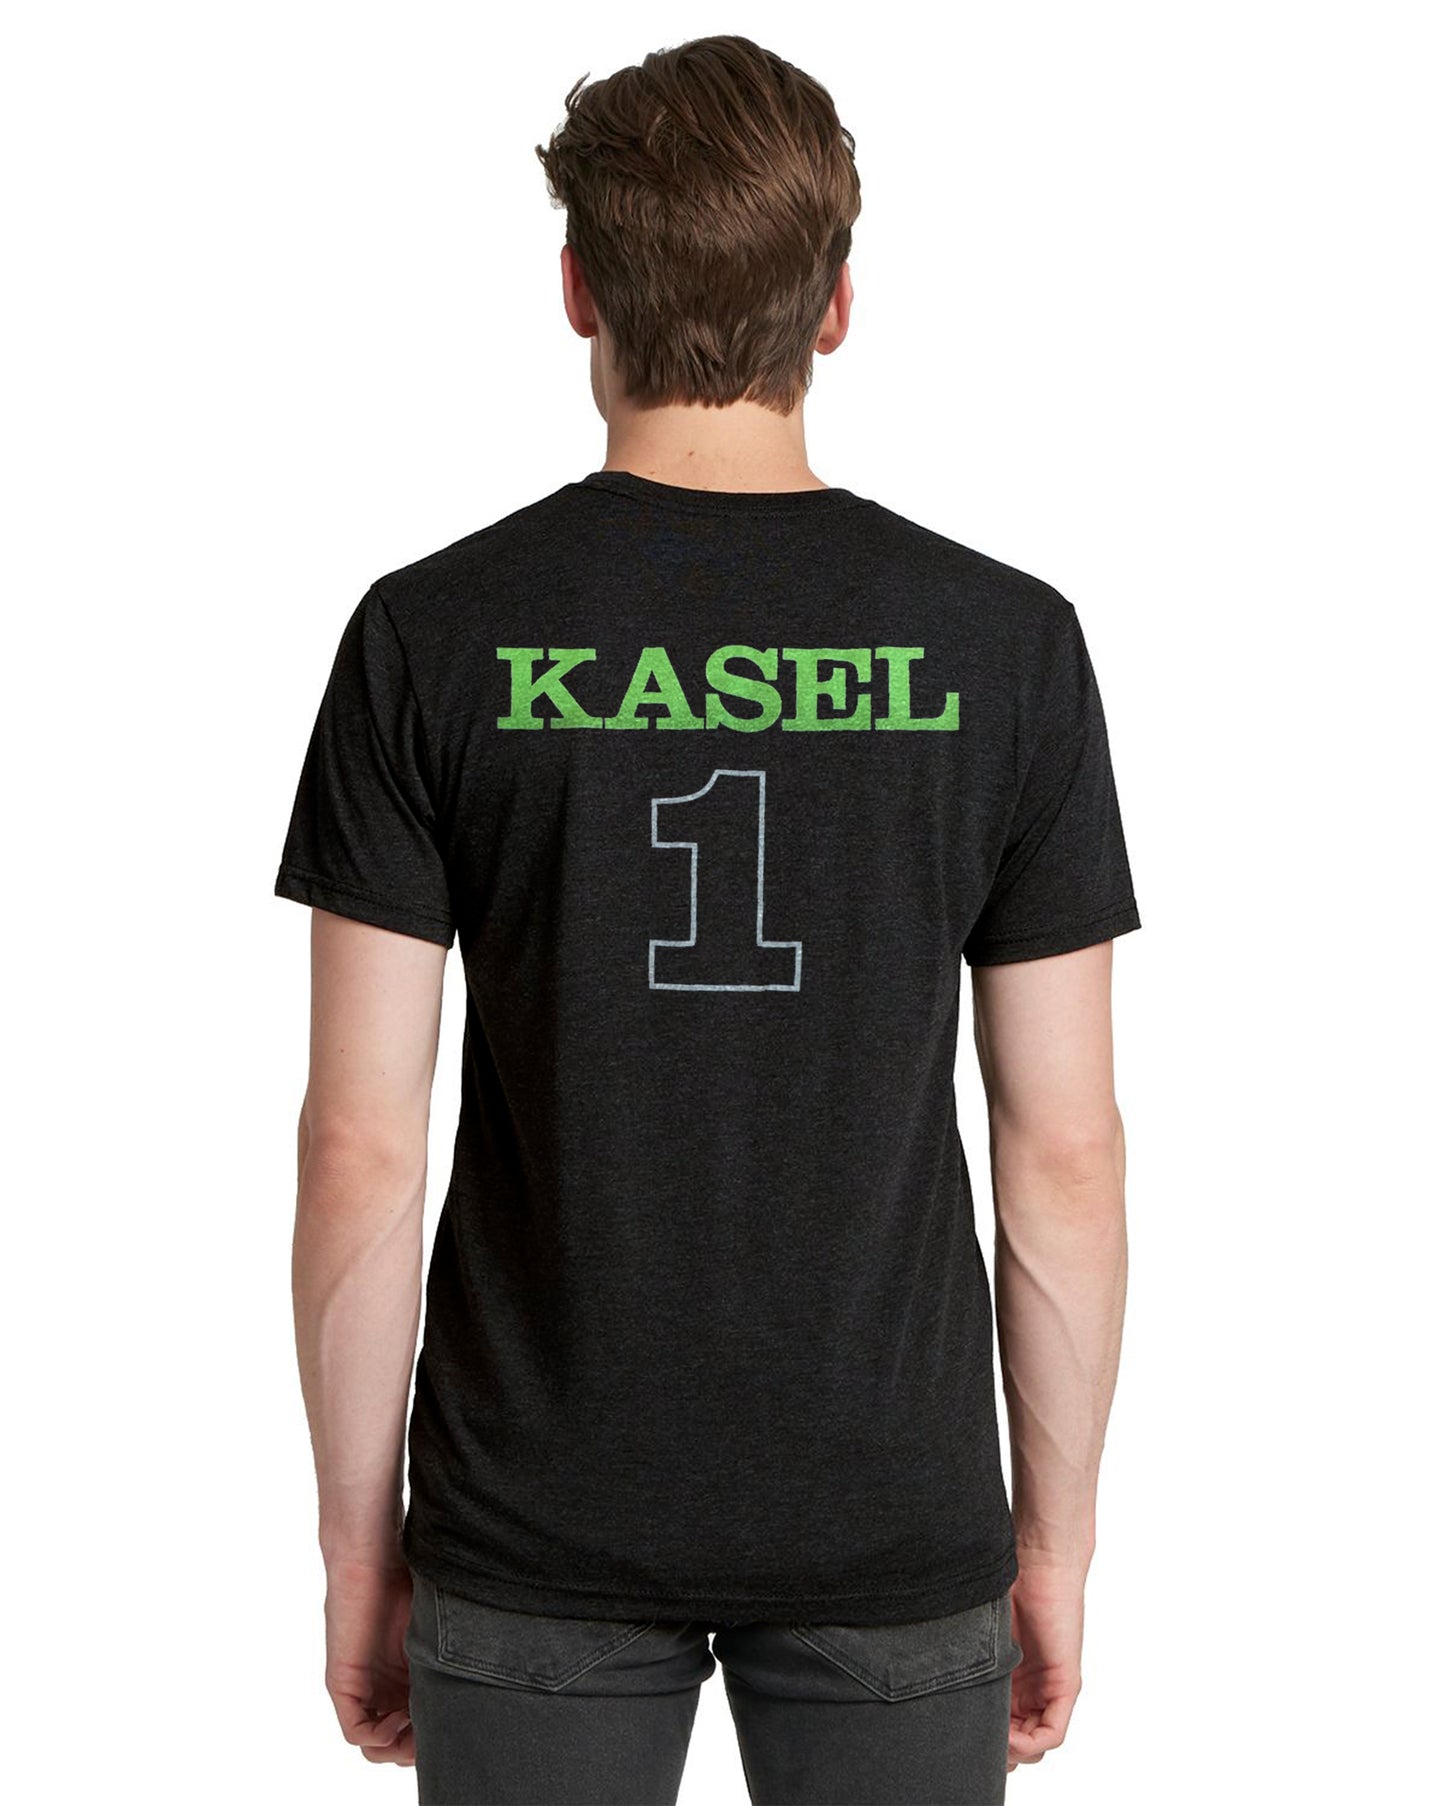 KASEL #1 Jersey T-Shirt